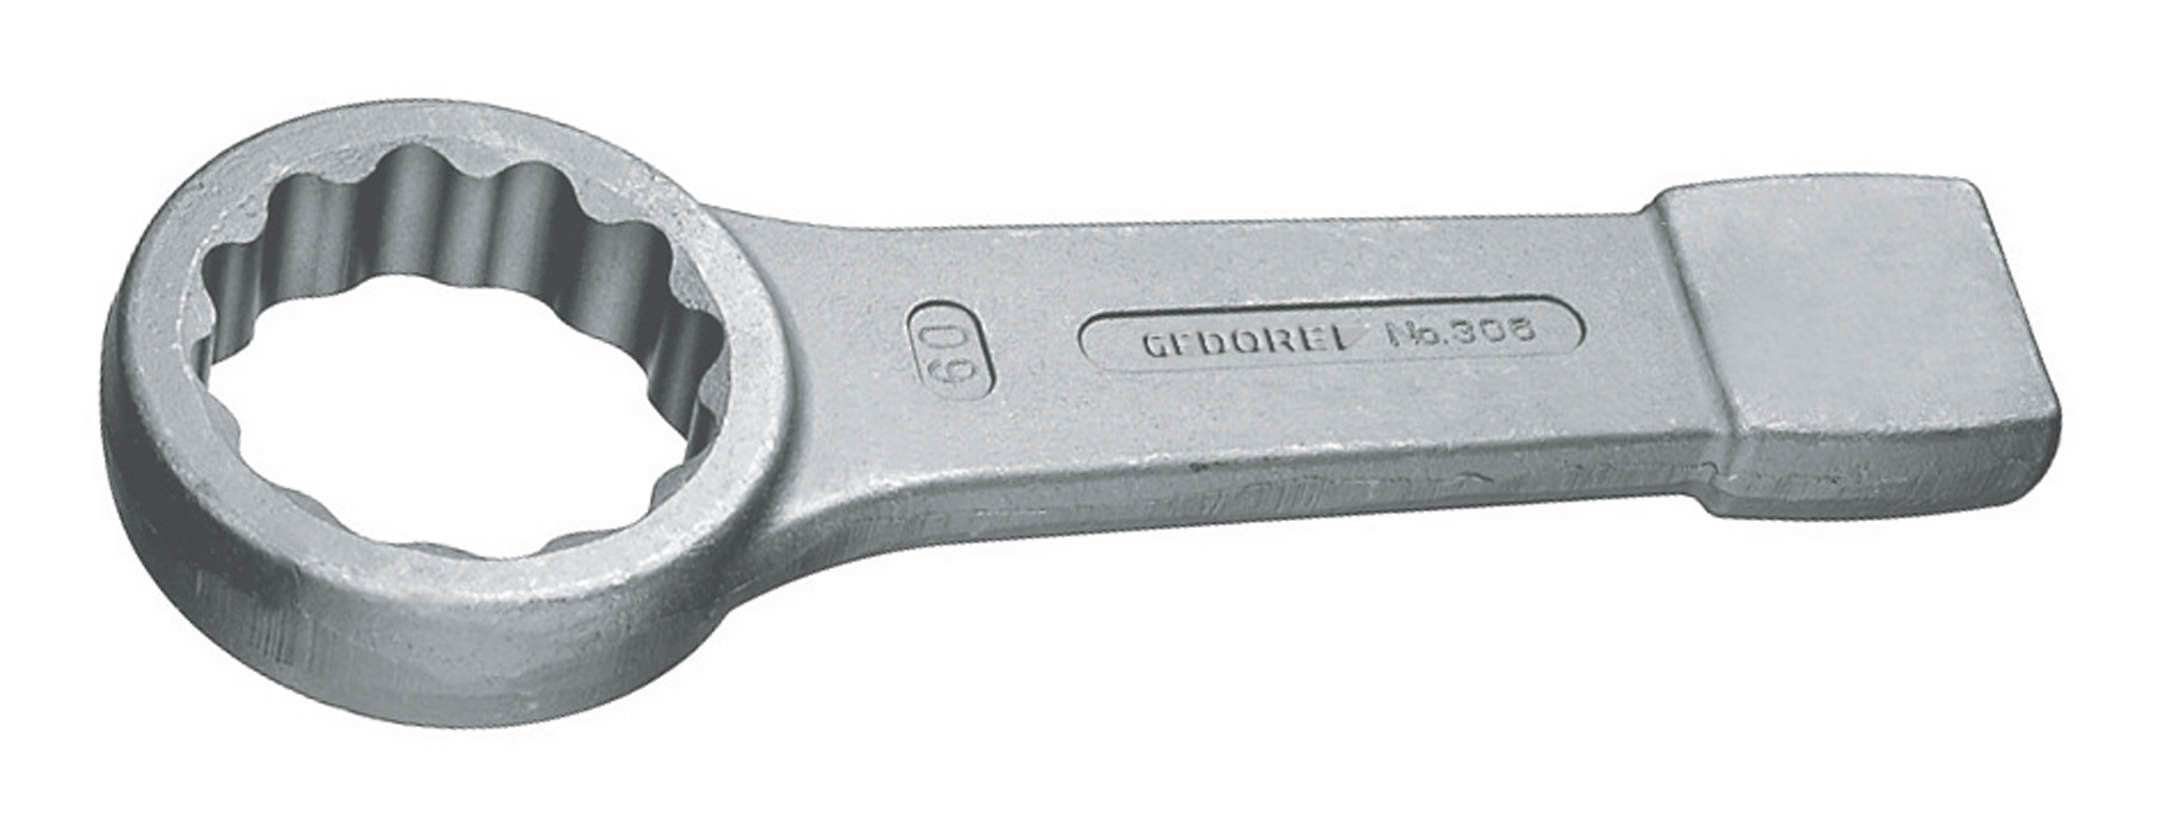 Gedore Ringschlüssel, Schlag DIN7444 60 mm